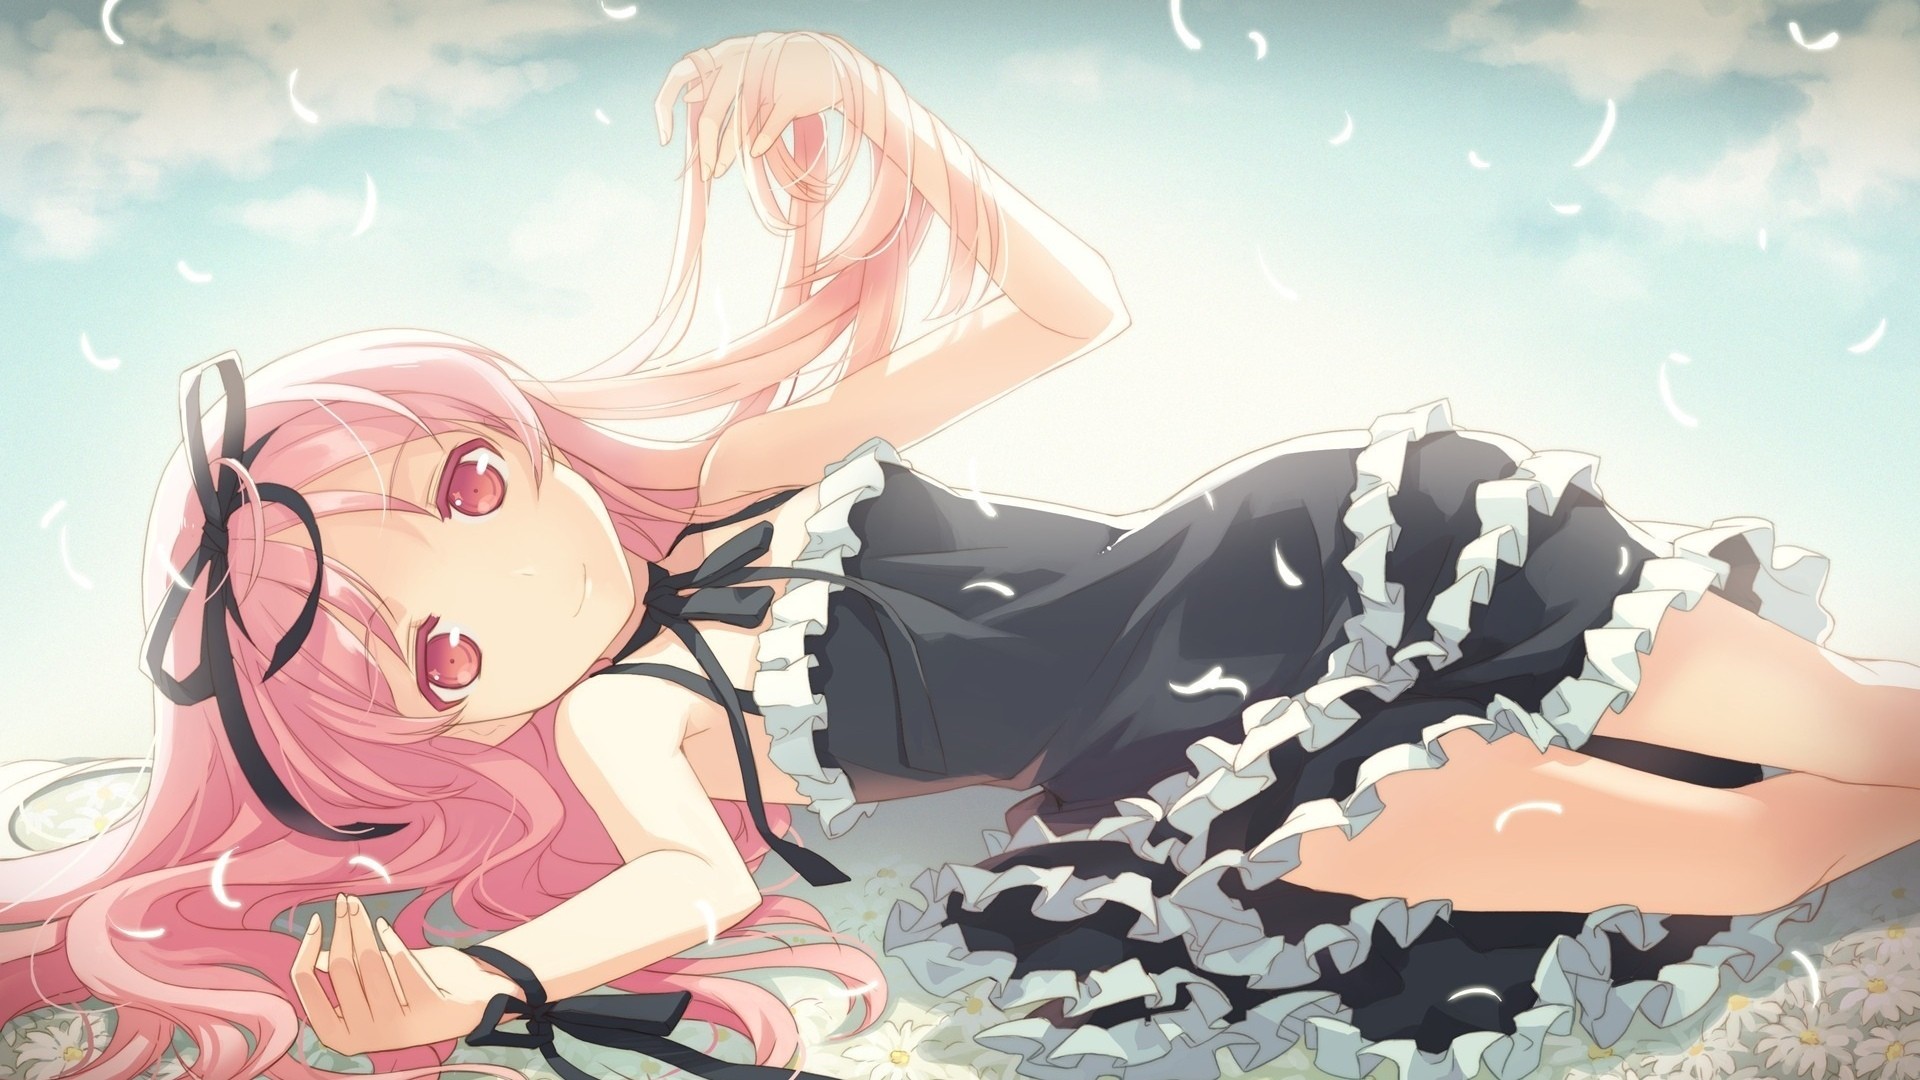 Anime 1920x1080 anime girls anime pink hair pink eyes long hair looking at viewer lying down smiling